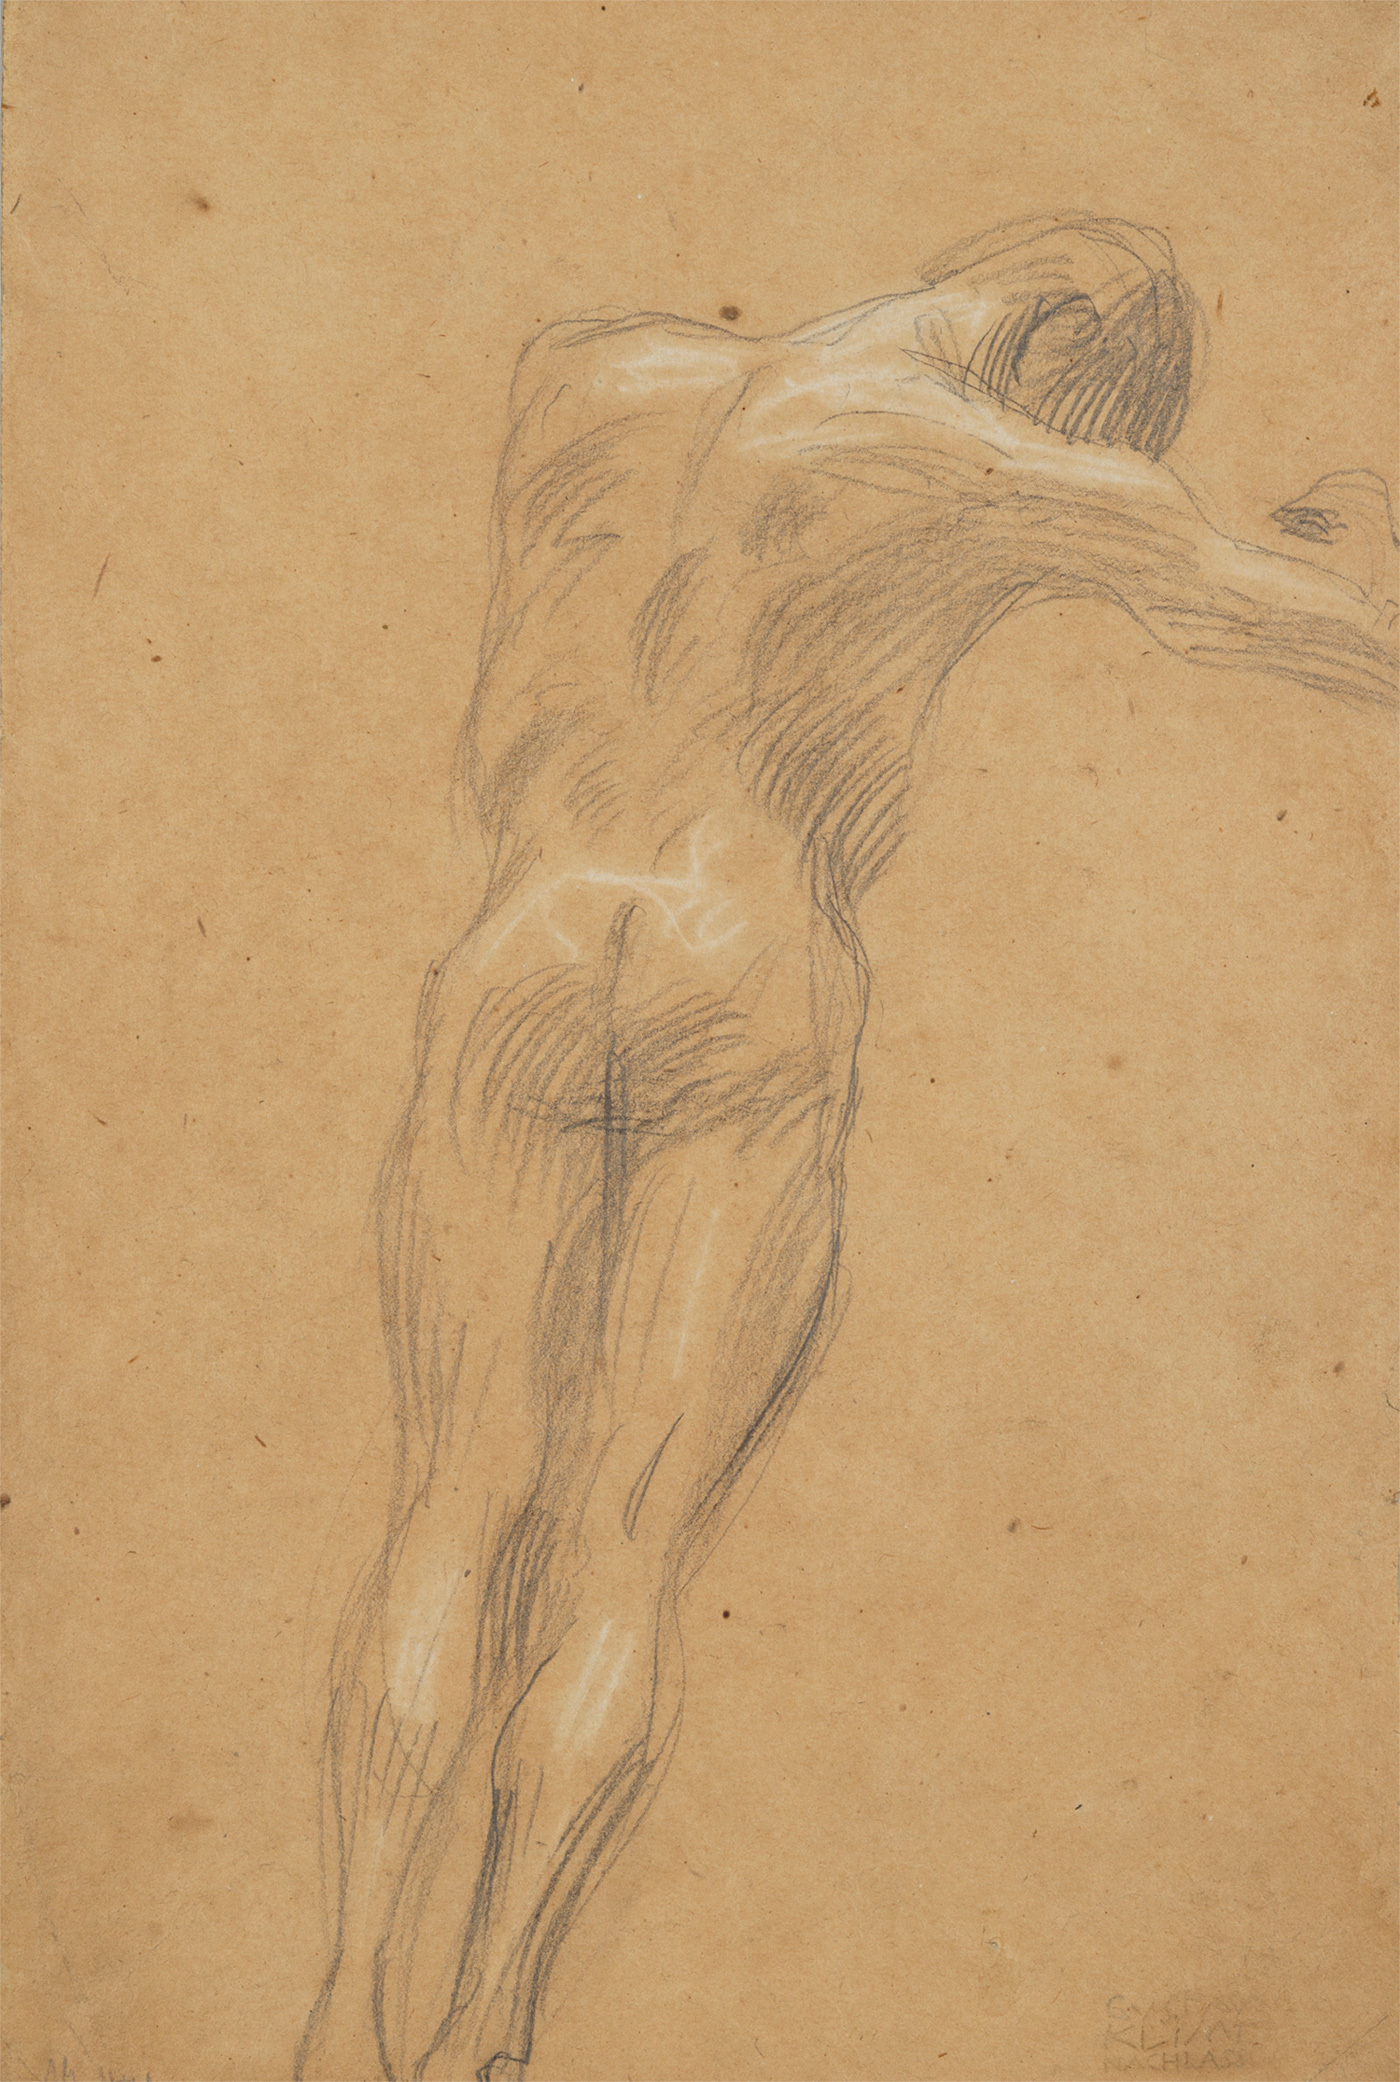 グスタフ・クリムト《右向きの浮遊する男性裸像》（ウィーン大学大広間天井画《哲学》のための習作）1897-99年　京都国立近代美術館